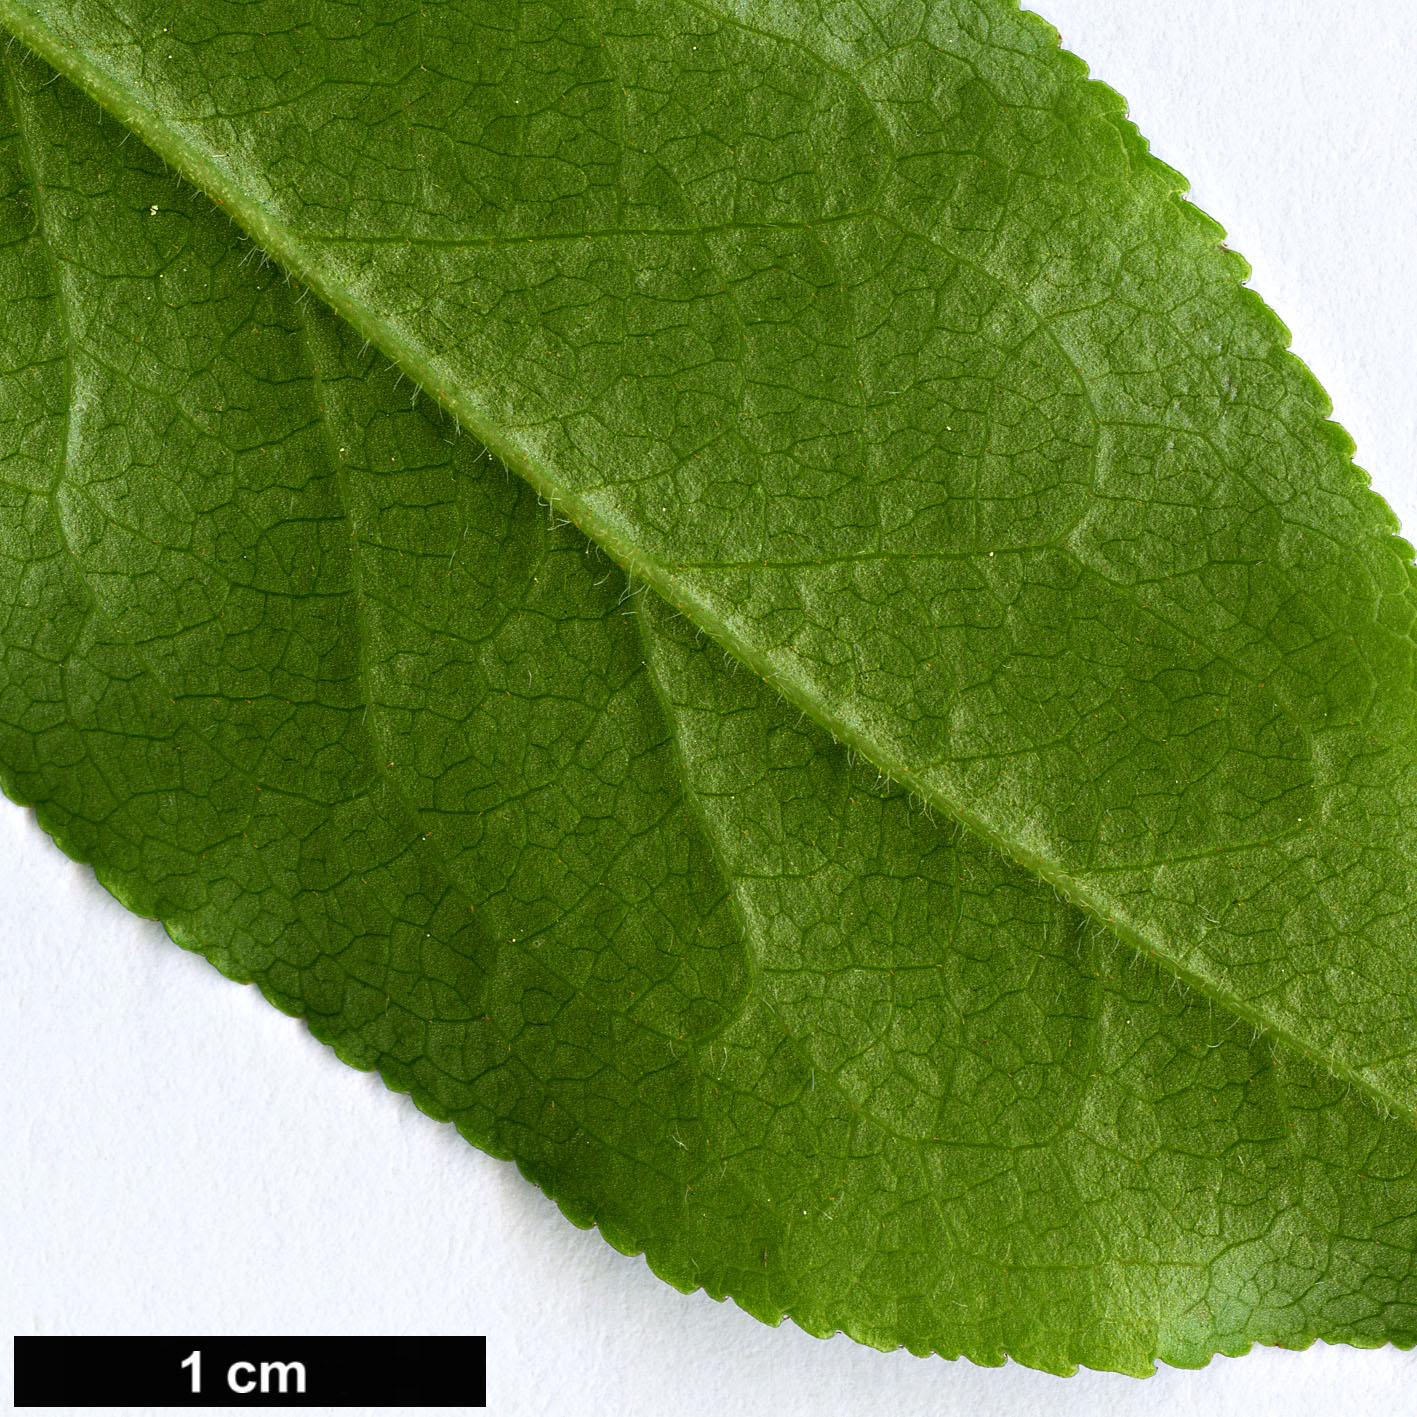 High resolution image: Family: Ericaceae - Genus: Vaccinium - Taxon: arctostaphylos